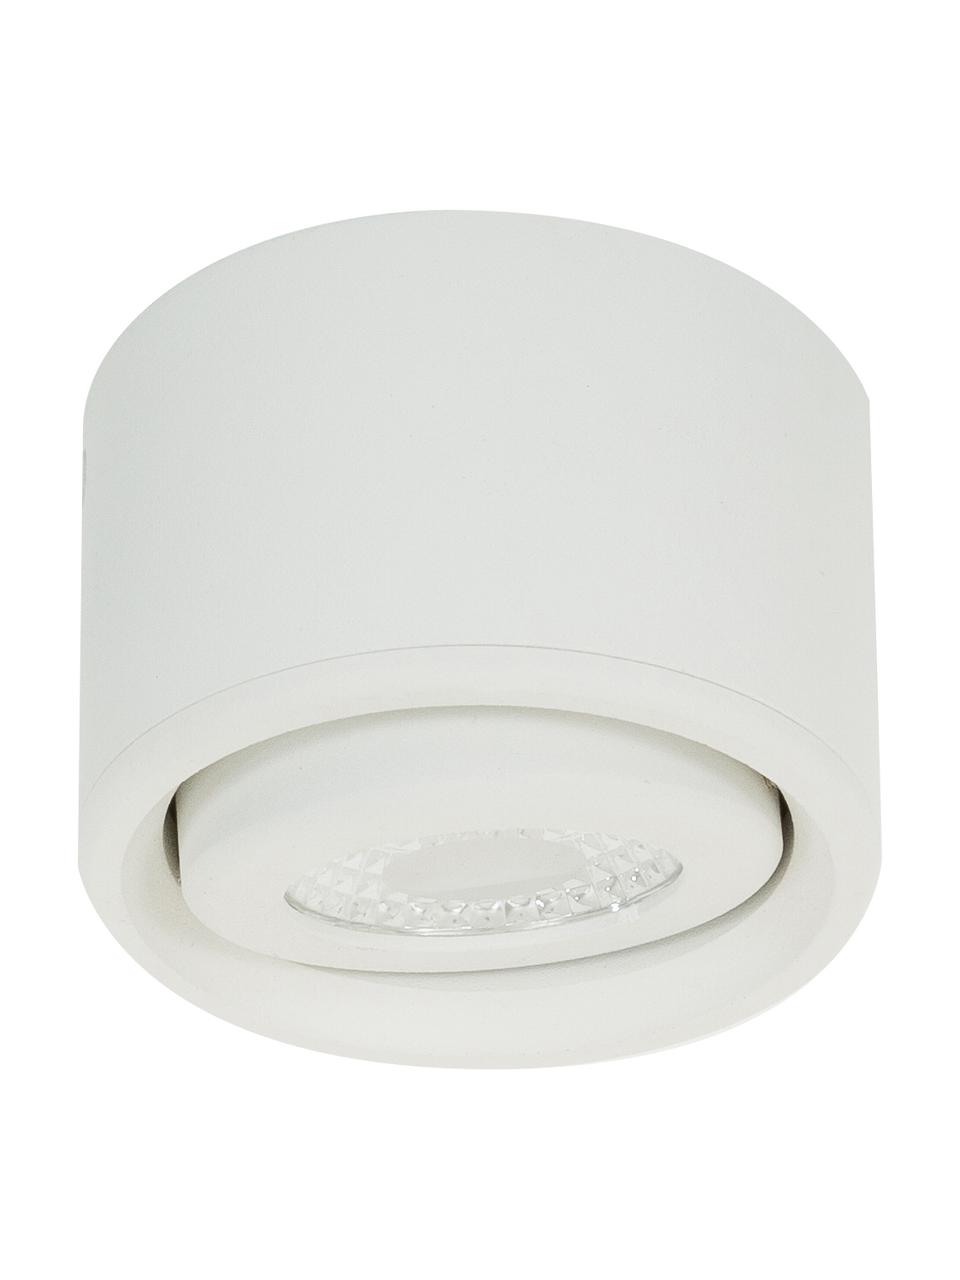 LED-Deckenspot Anzio in Weiß, Weiß, Ø 8 x H 5 cm